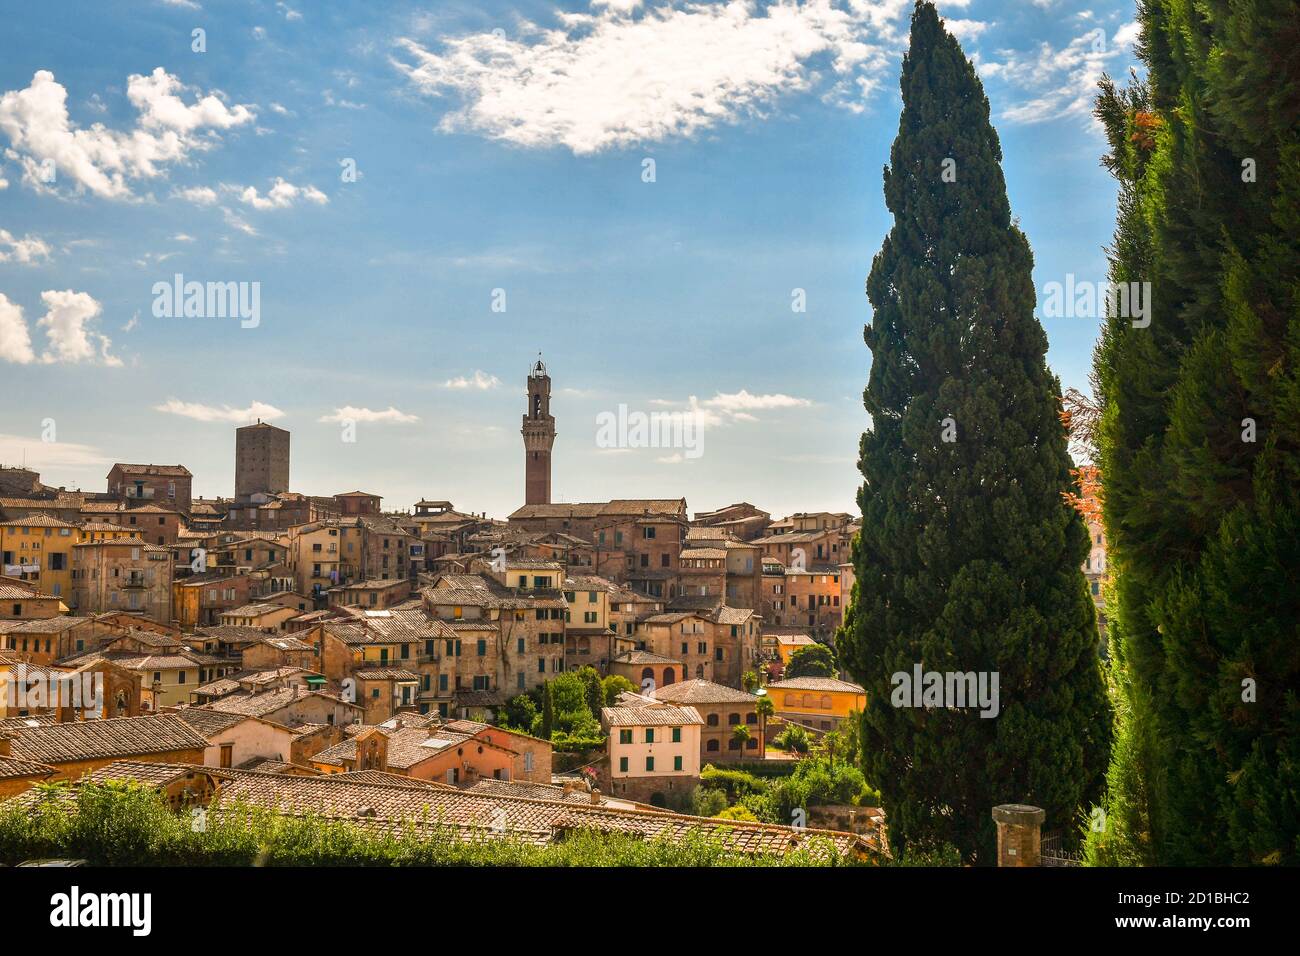 Paysage urbain du centre de Sienne, UNESCO W.H. Site, avec les tours médiévales Torre del Mangia et Torre dell'Orsa dans une journée ensoleillée d'été, Toscane, Italie Banque D'Images